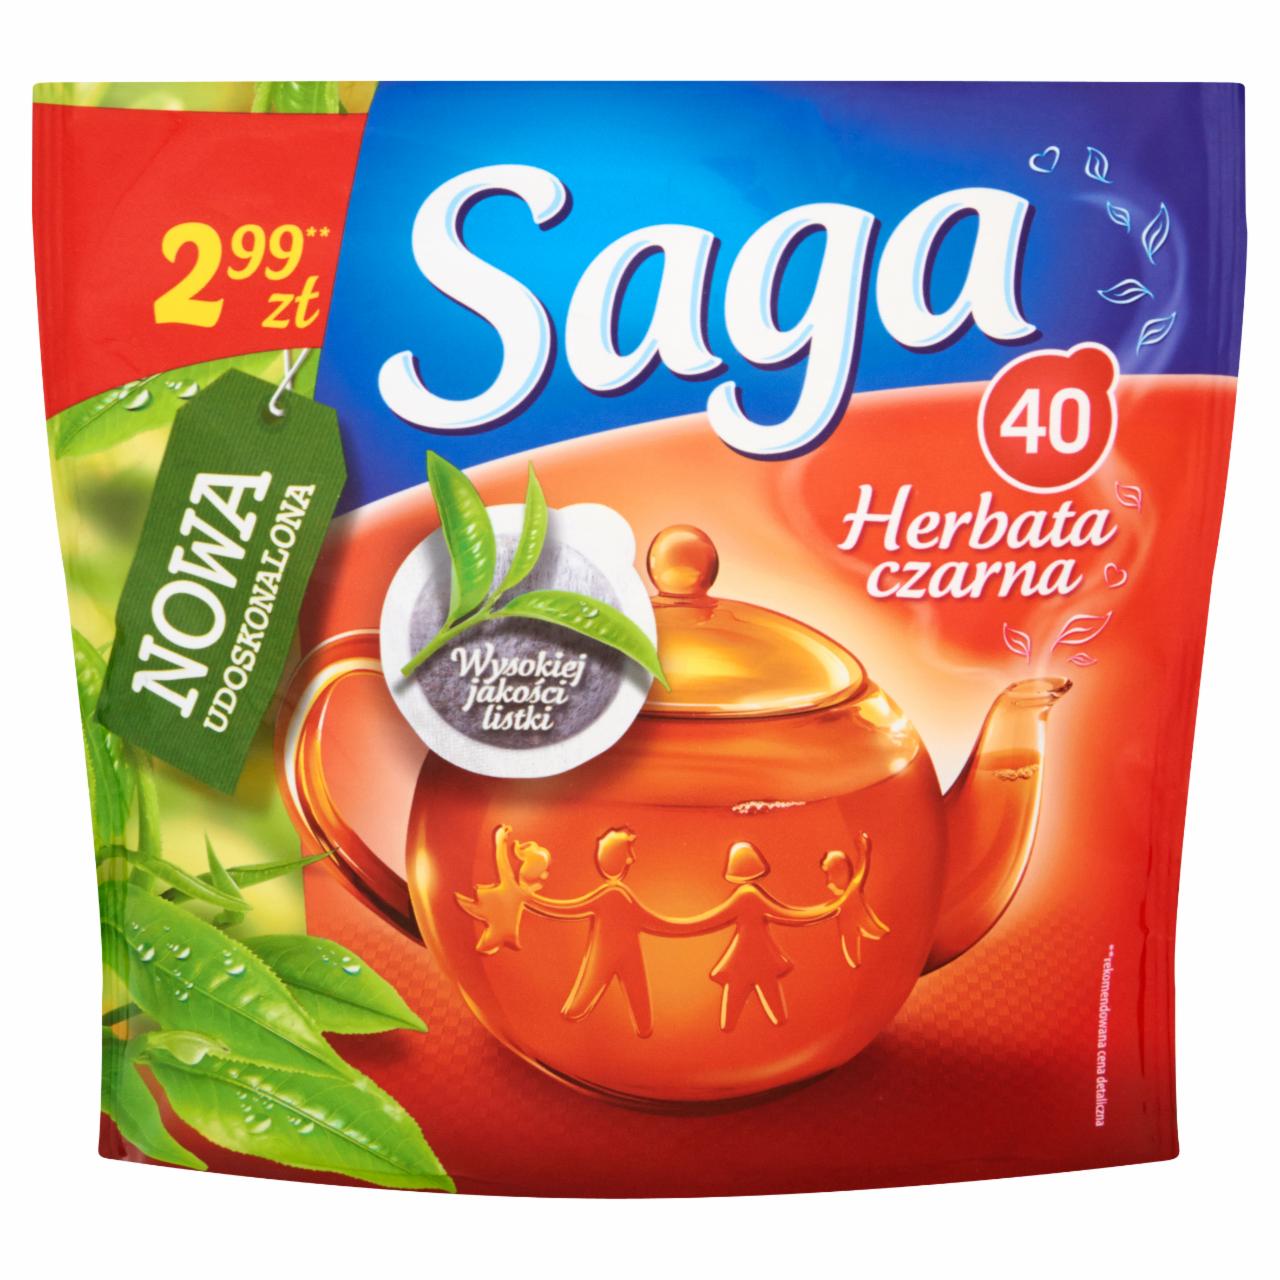 Zdjęcia - Saga Herbata czarna 48 g (40 torebek)